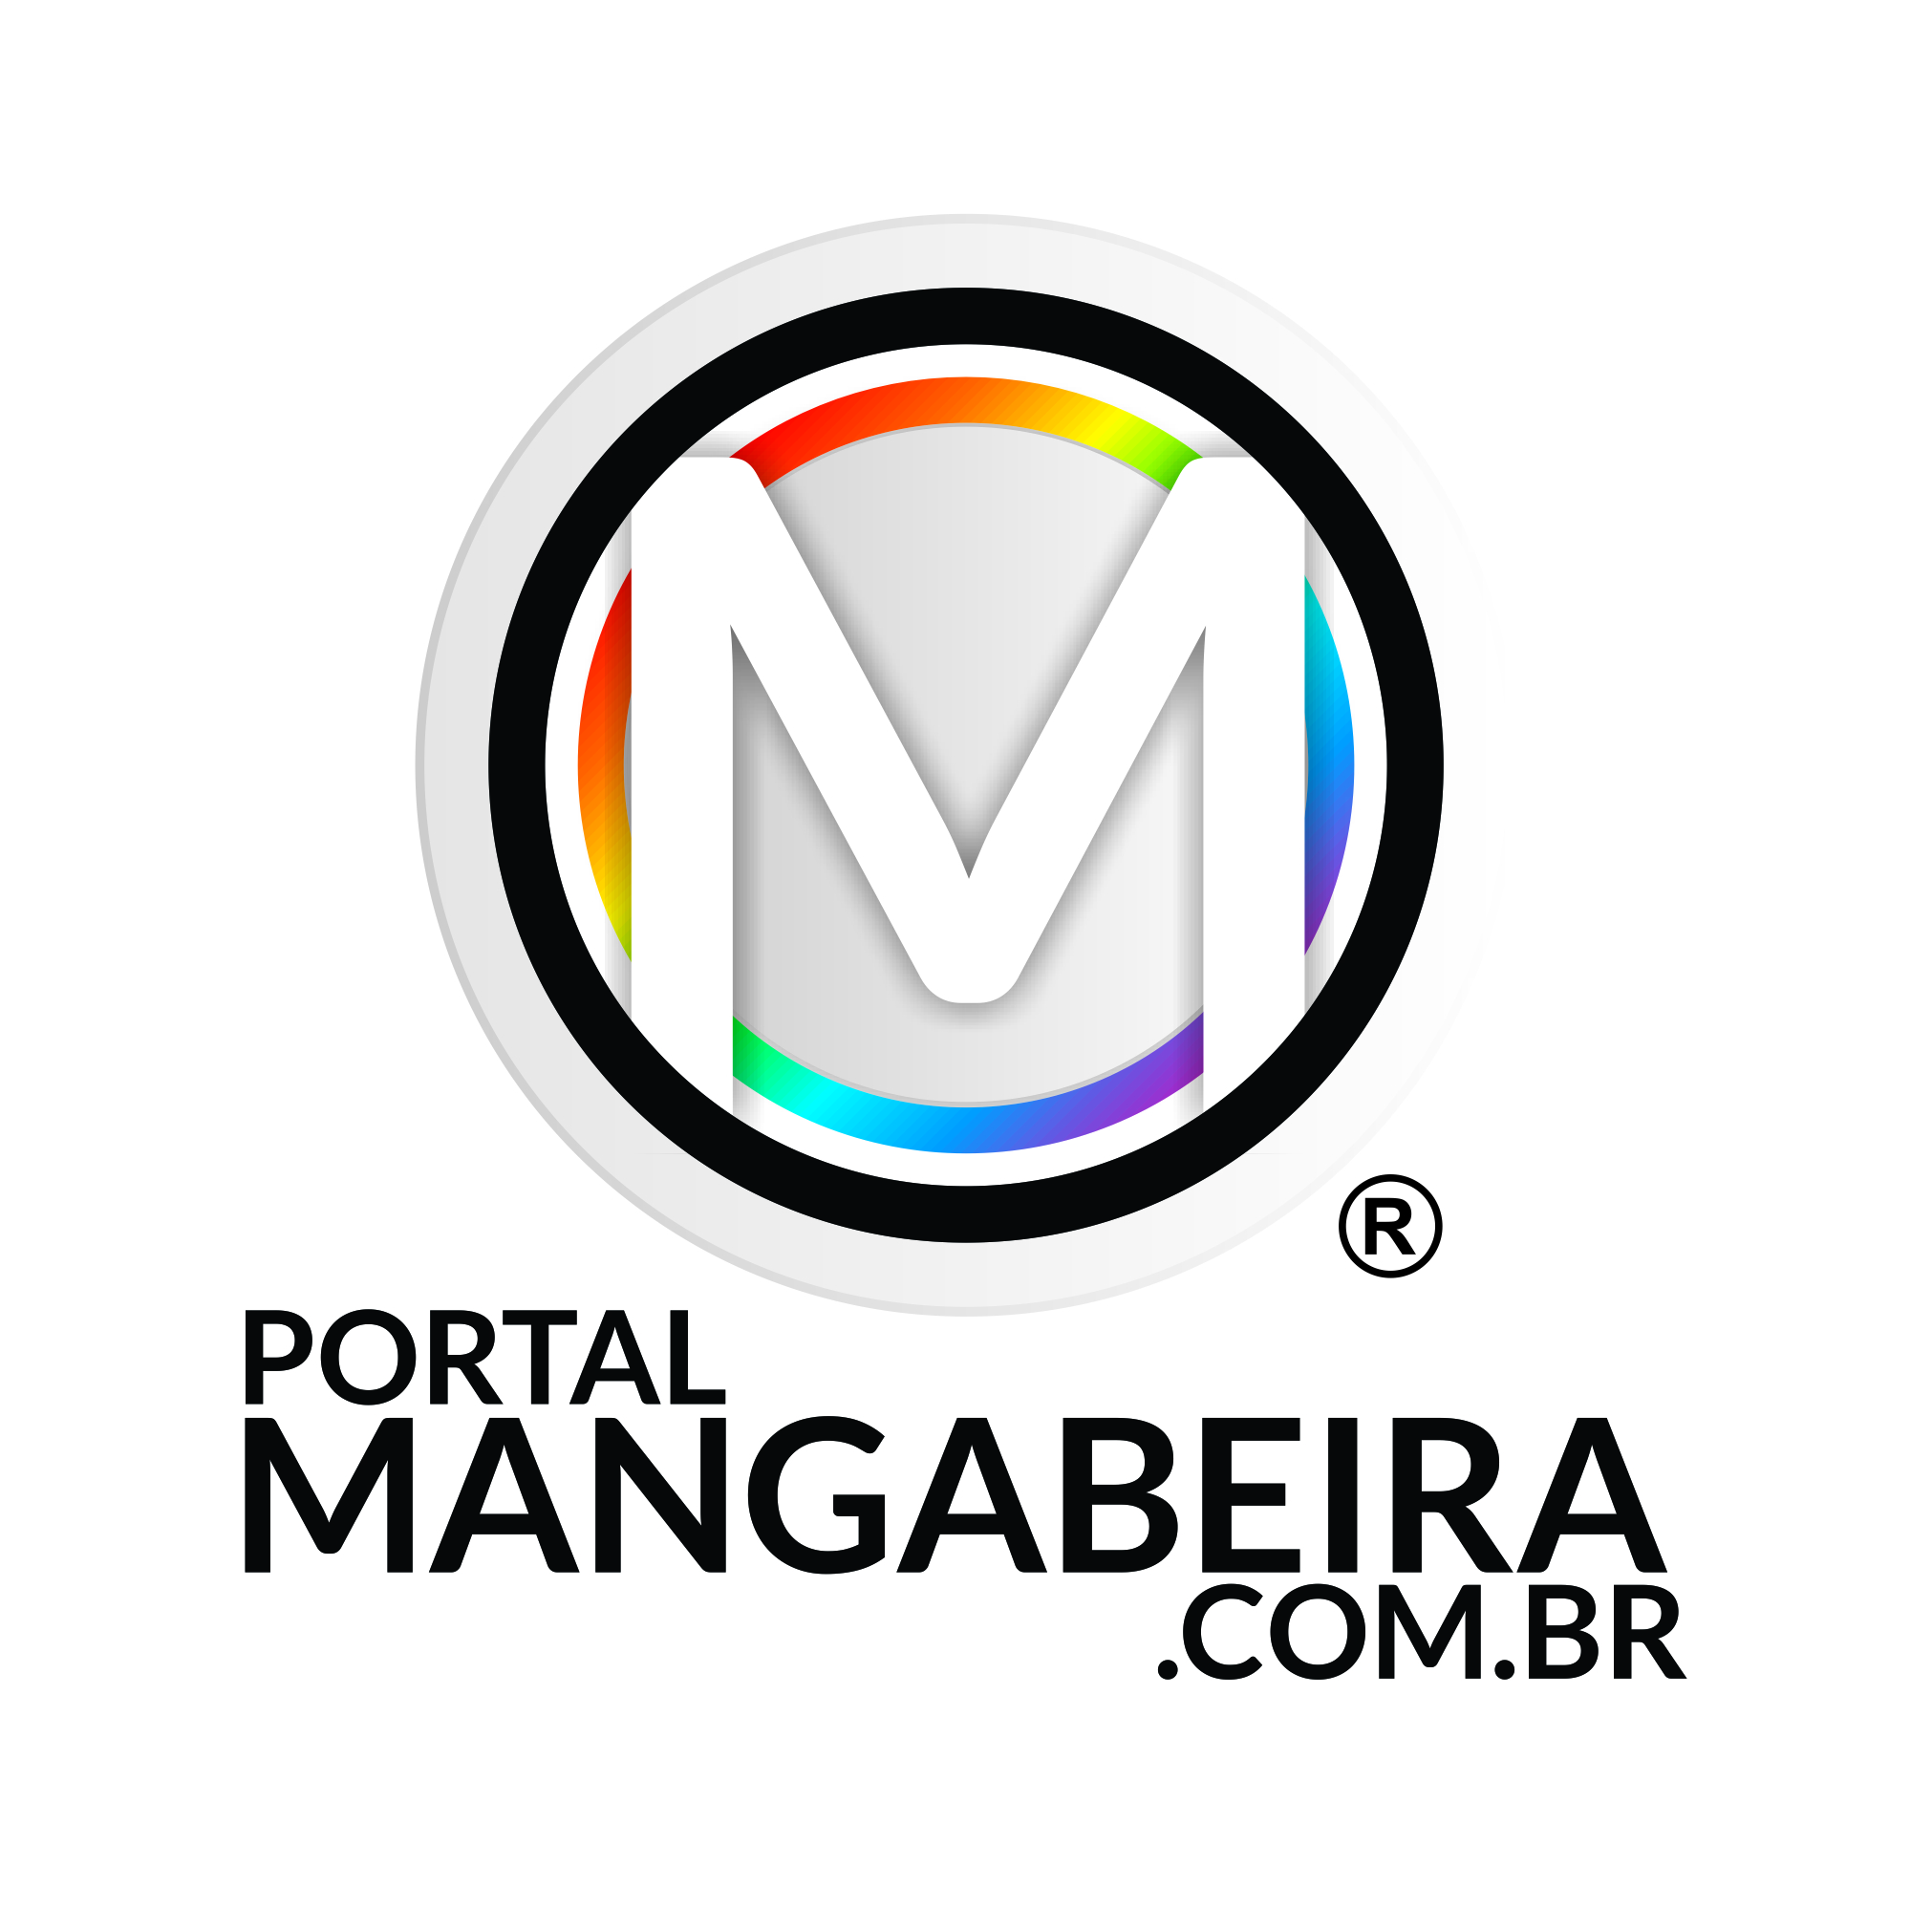 (c) Portalmangabeira.com.br